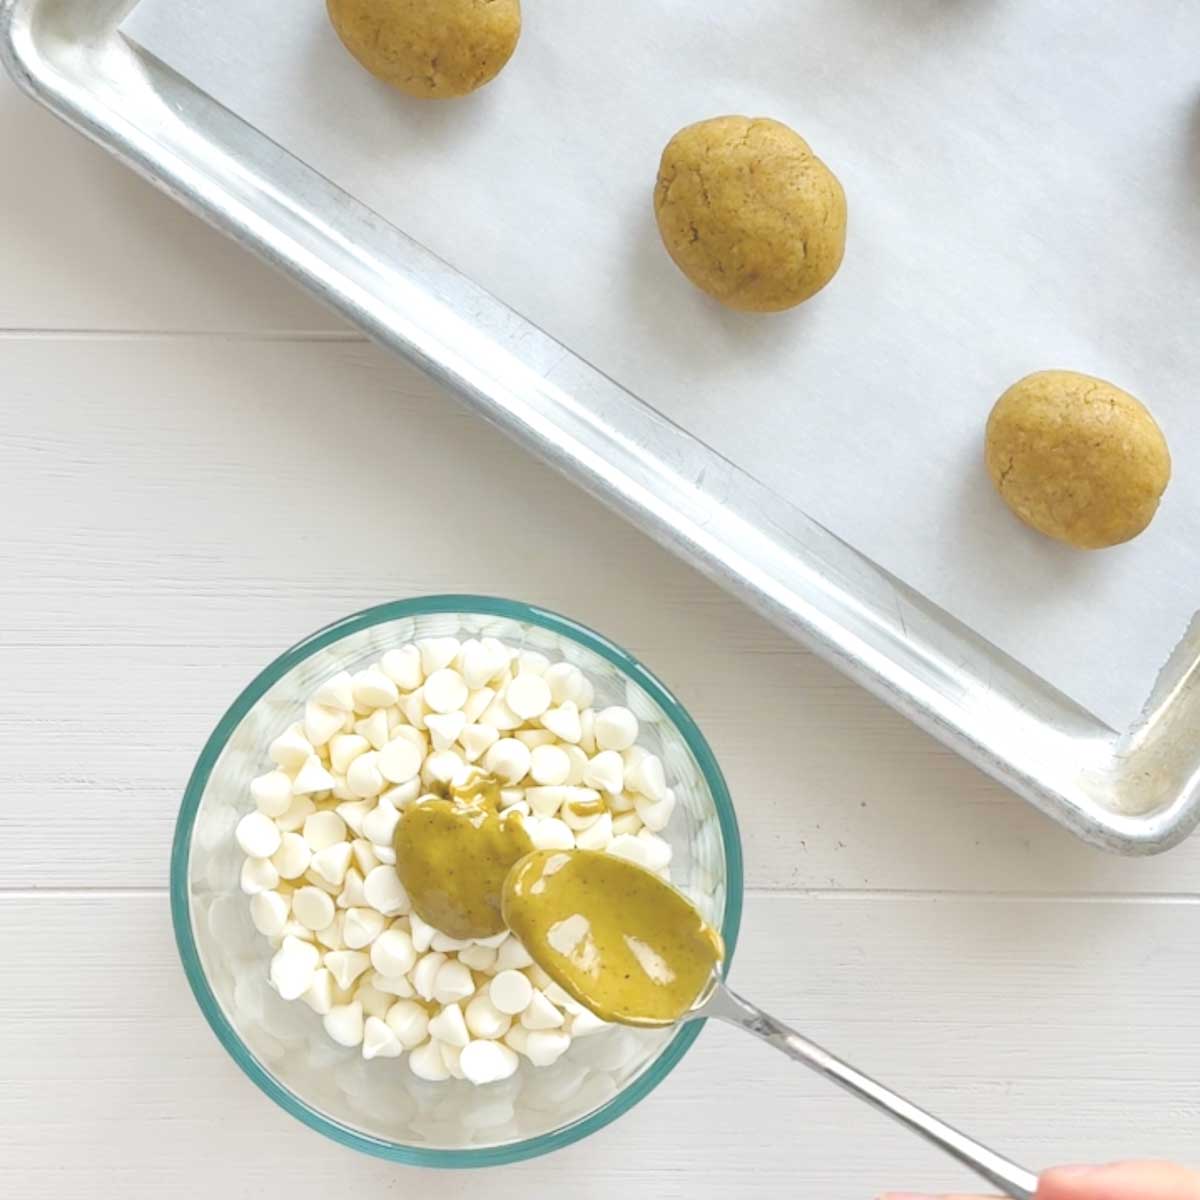 Homemade Pistachio Easter Eggs Recipe - Matcha Scones